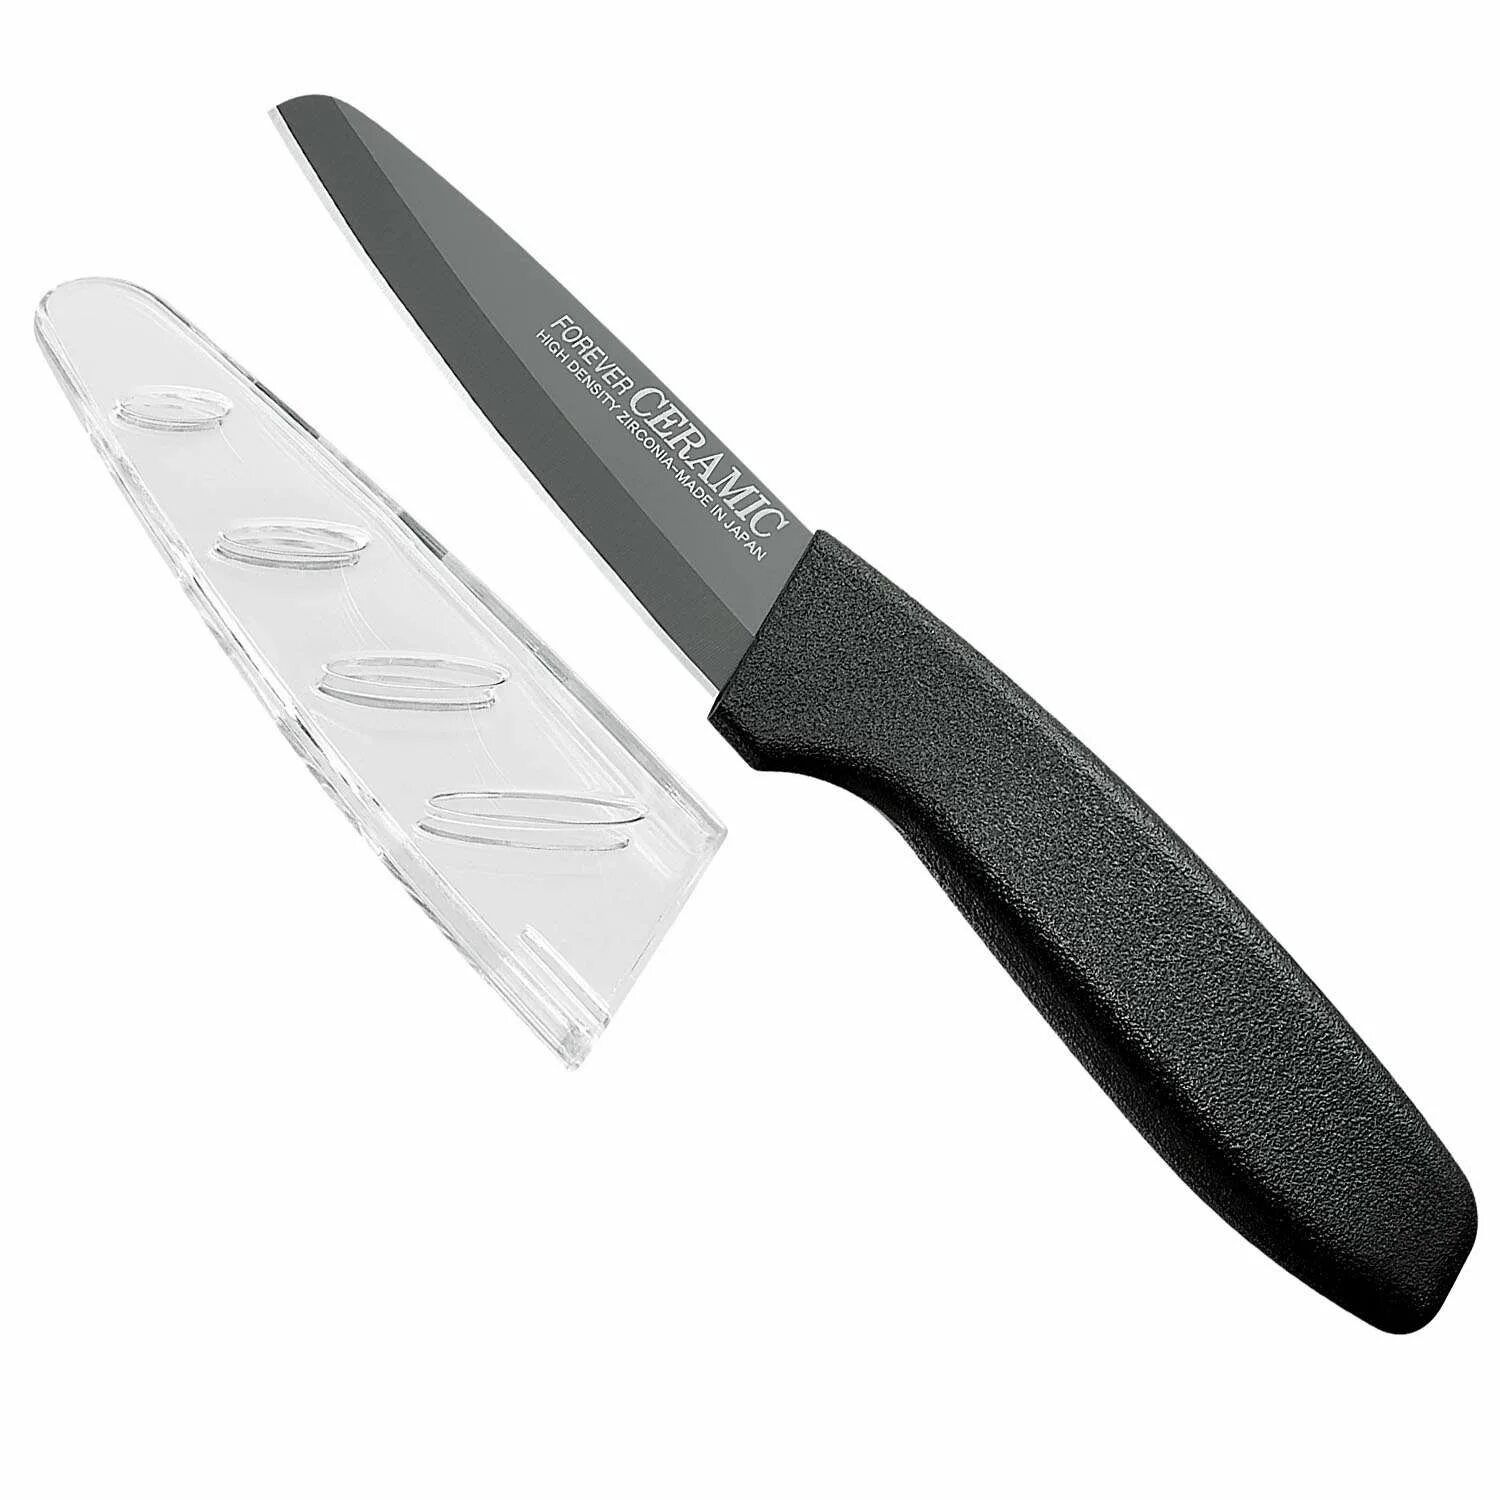 Hatamoto нож универсальный Ergo 15 см. Kenji Knife керамические ножи. Нож Sakura. Набор winner WR-7312 3 ножа с подставкой.